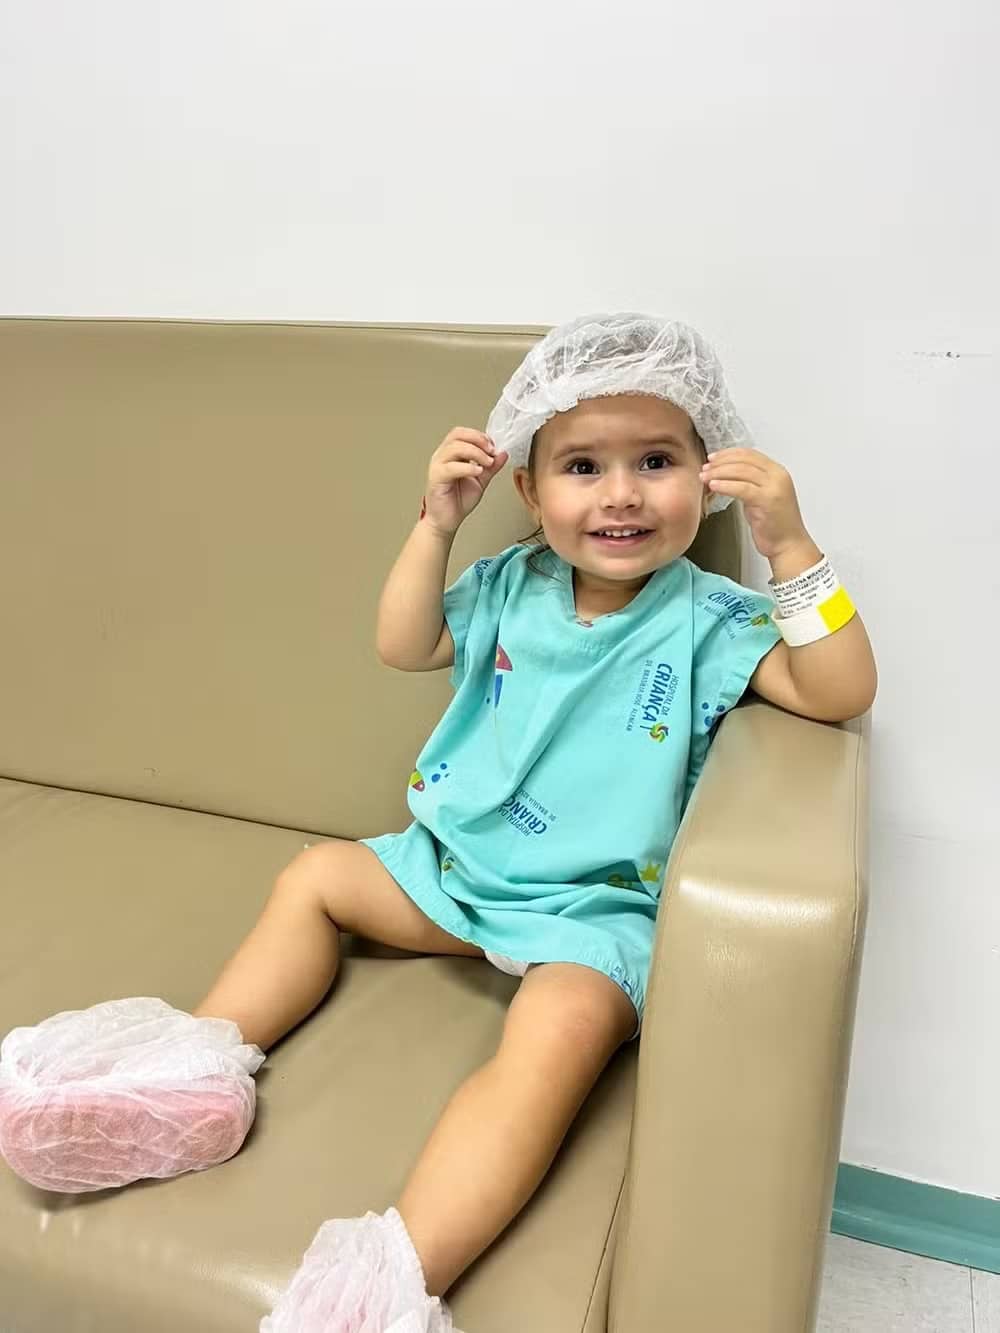 revistapazes.com - [VIDEO] Menina de 2 anos com câncer raro reencontra irmãos após quimioterapia e internet vai às lágrimas